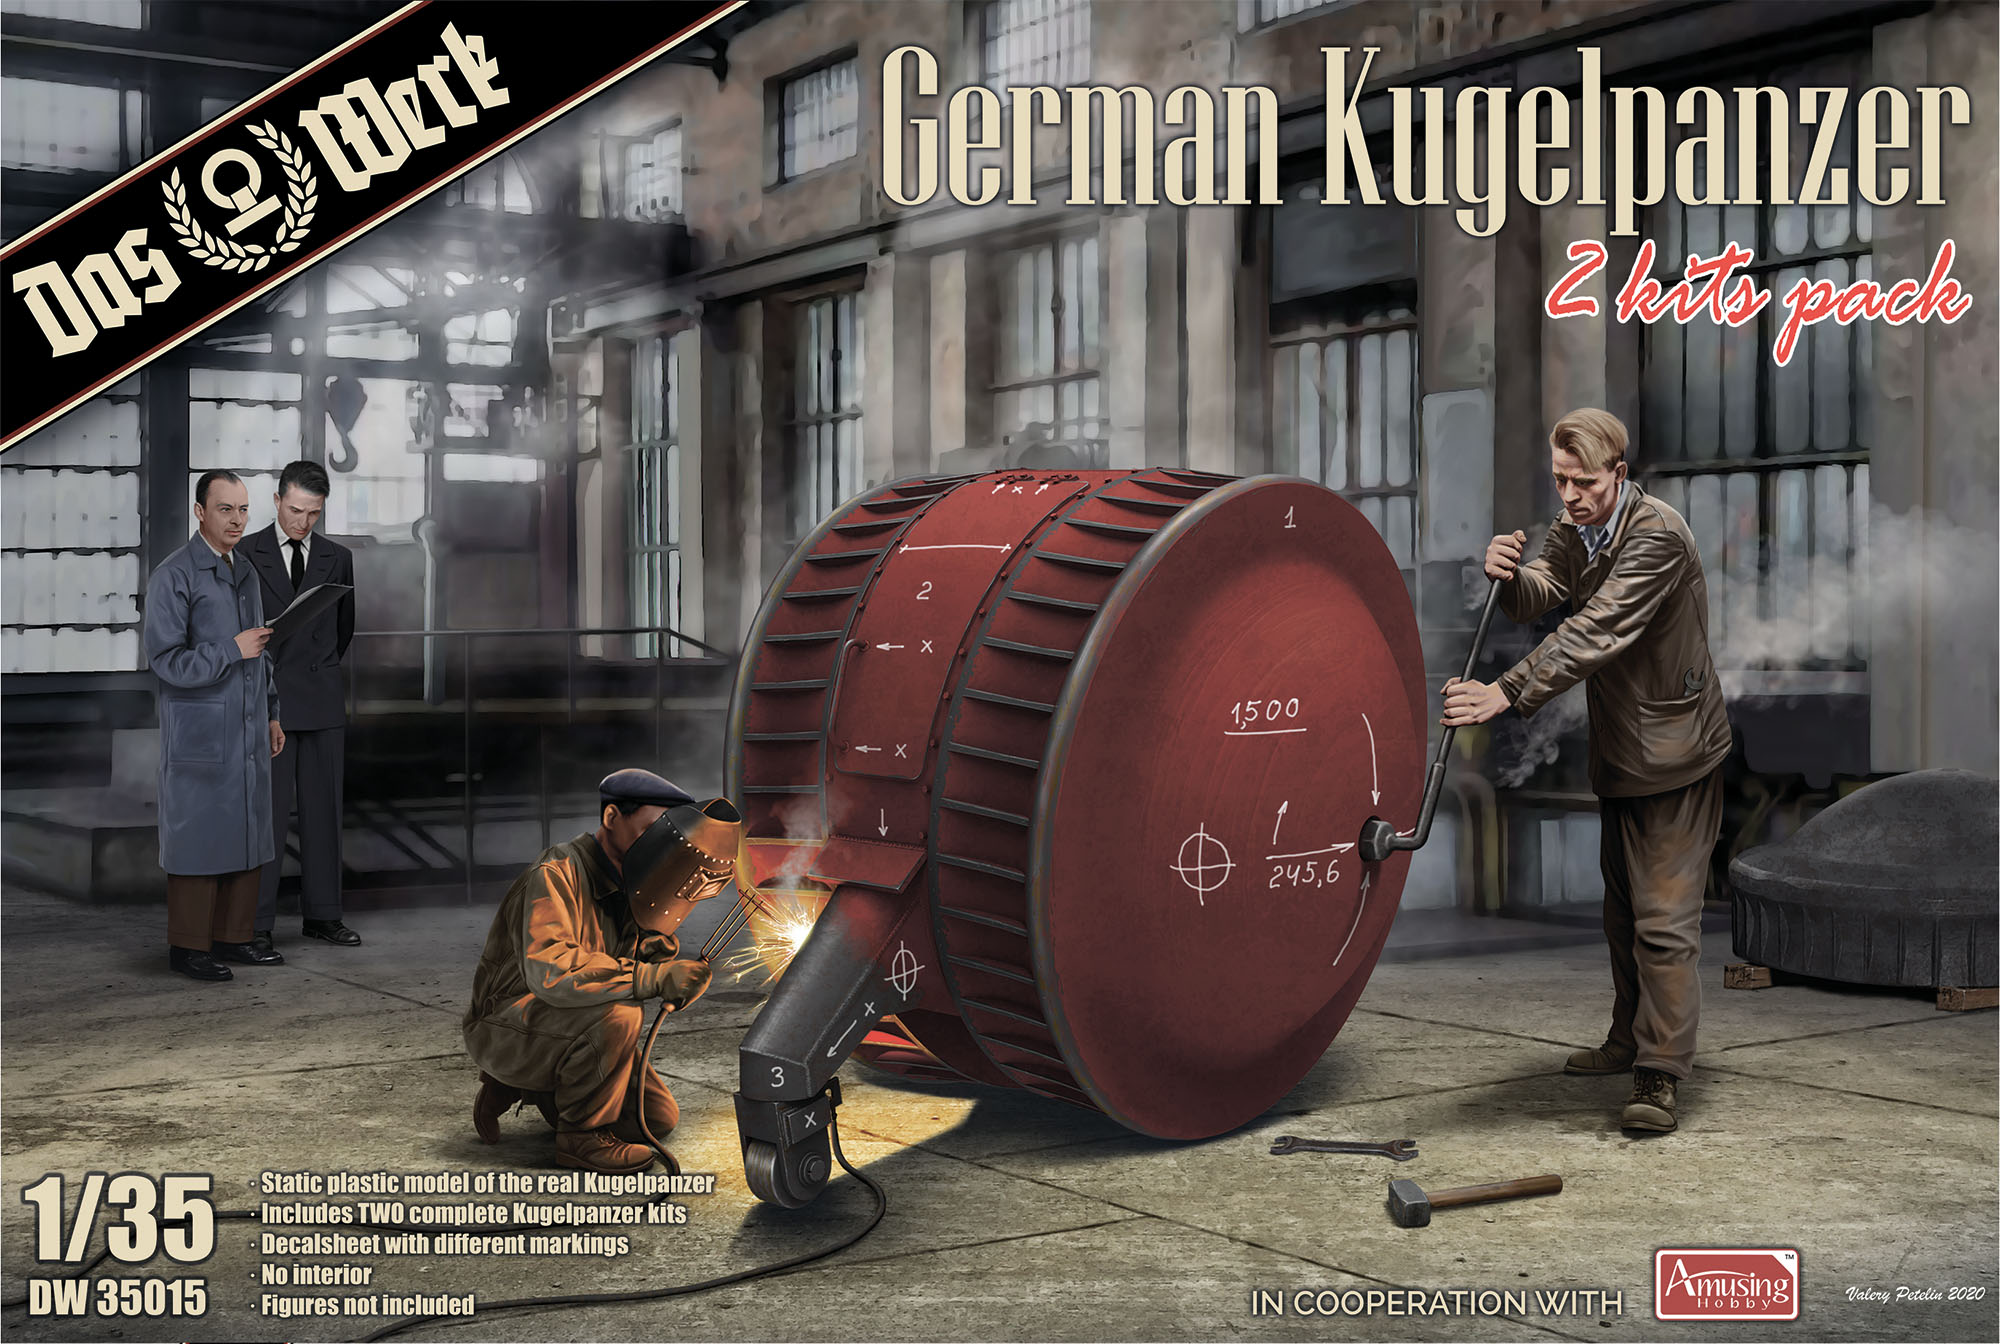 DW35015 German Kugelpanzer double pack  2 pcs  